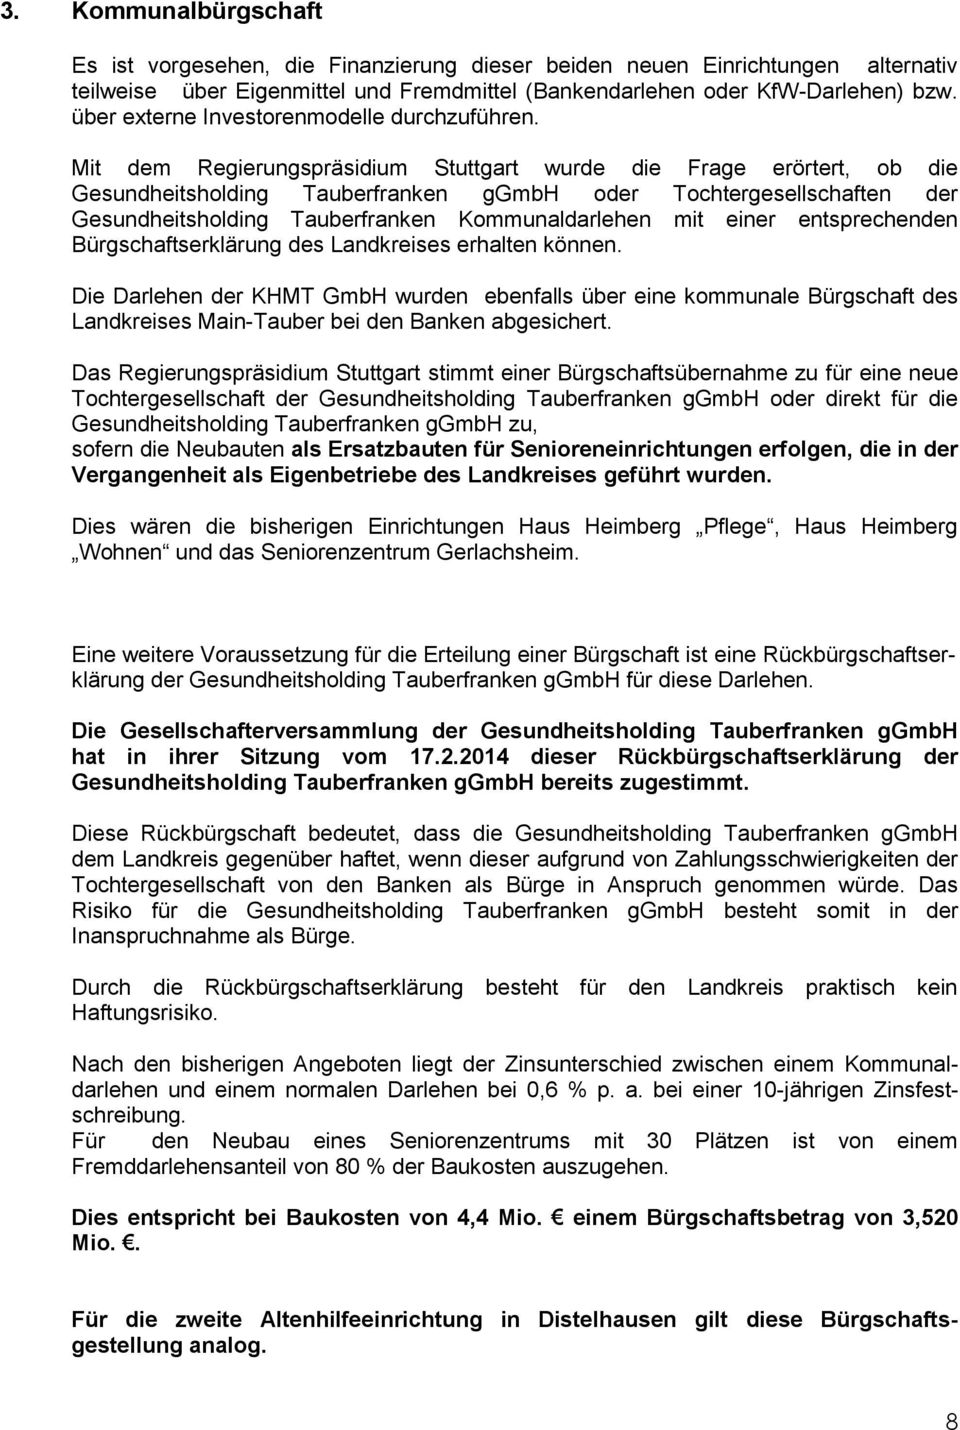 Mit dem Regierungspräsidium Stuttgart wurde die Frage erörtert, ob die Gesundheitsholding Tauberfranken ggmbh oder Tochtergesellschaften der Gesundheitsholding Tauberfranken Kommunaldarlehen mit